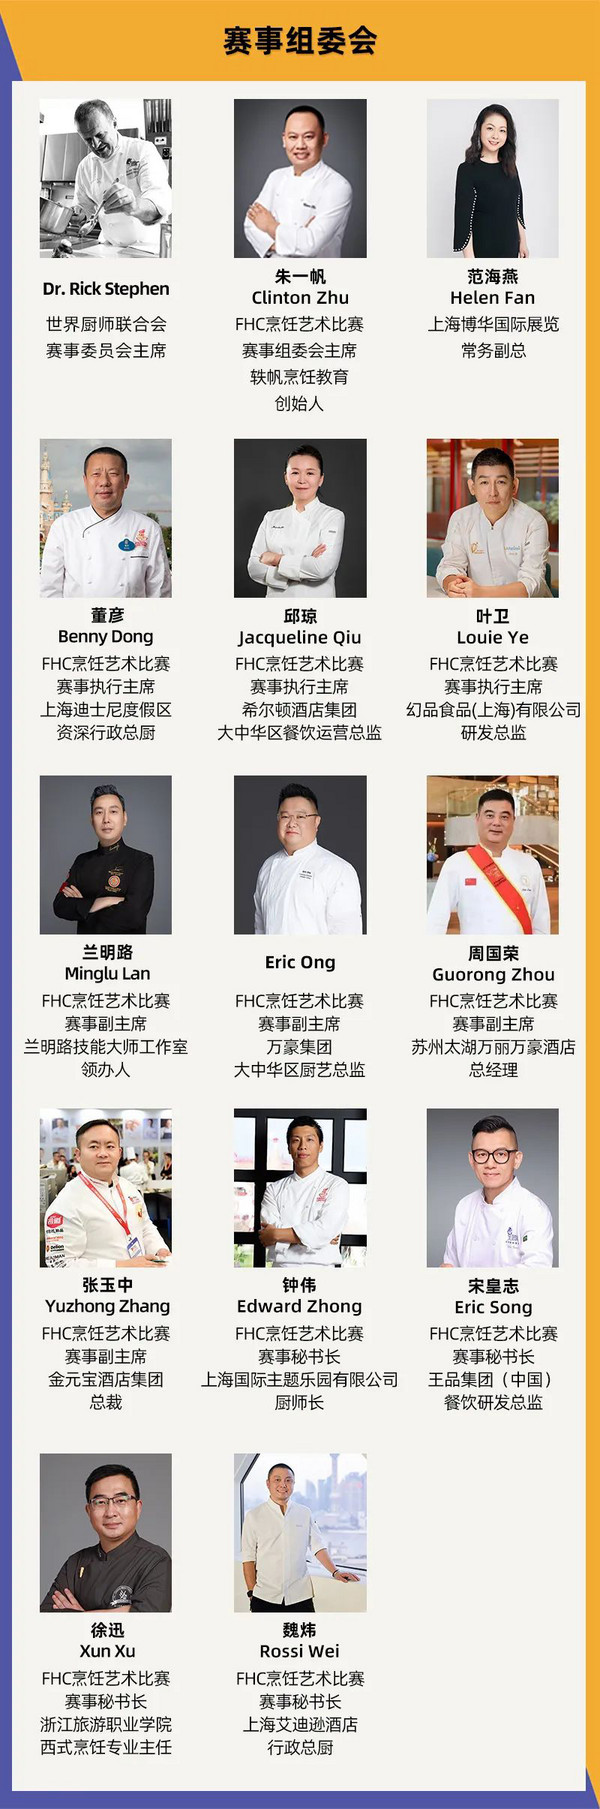 官宣！金秋之约 “烹”然心动 第二十四届FHC中国国际烹饪艺术比赛焕新出发！